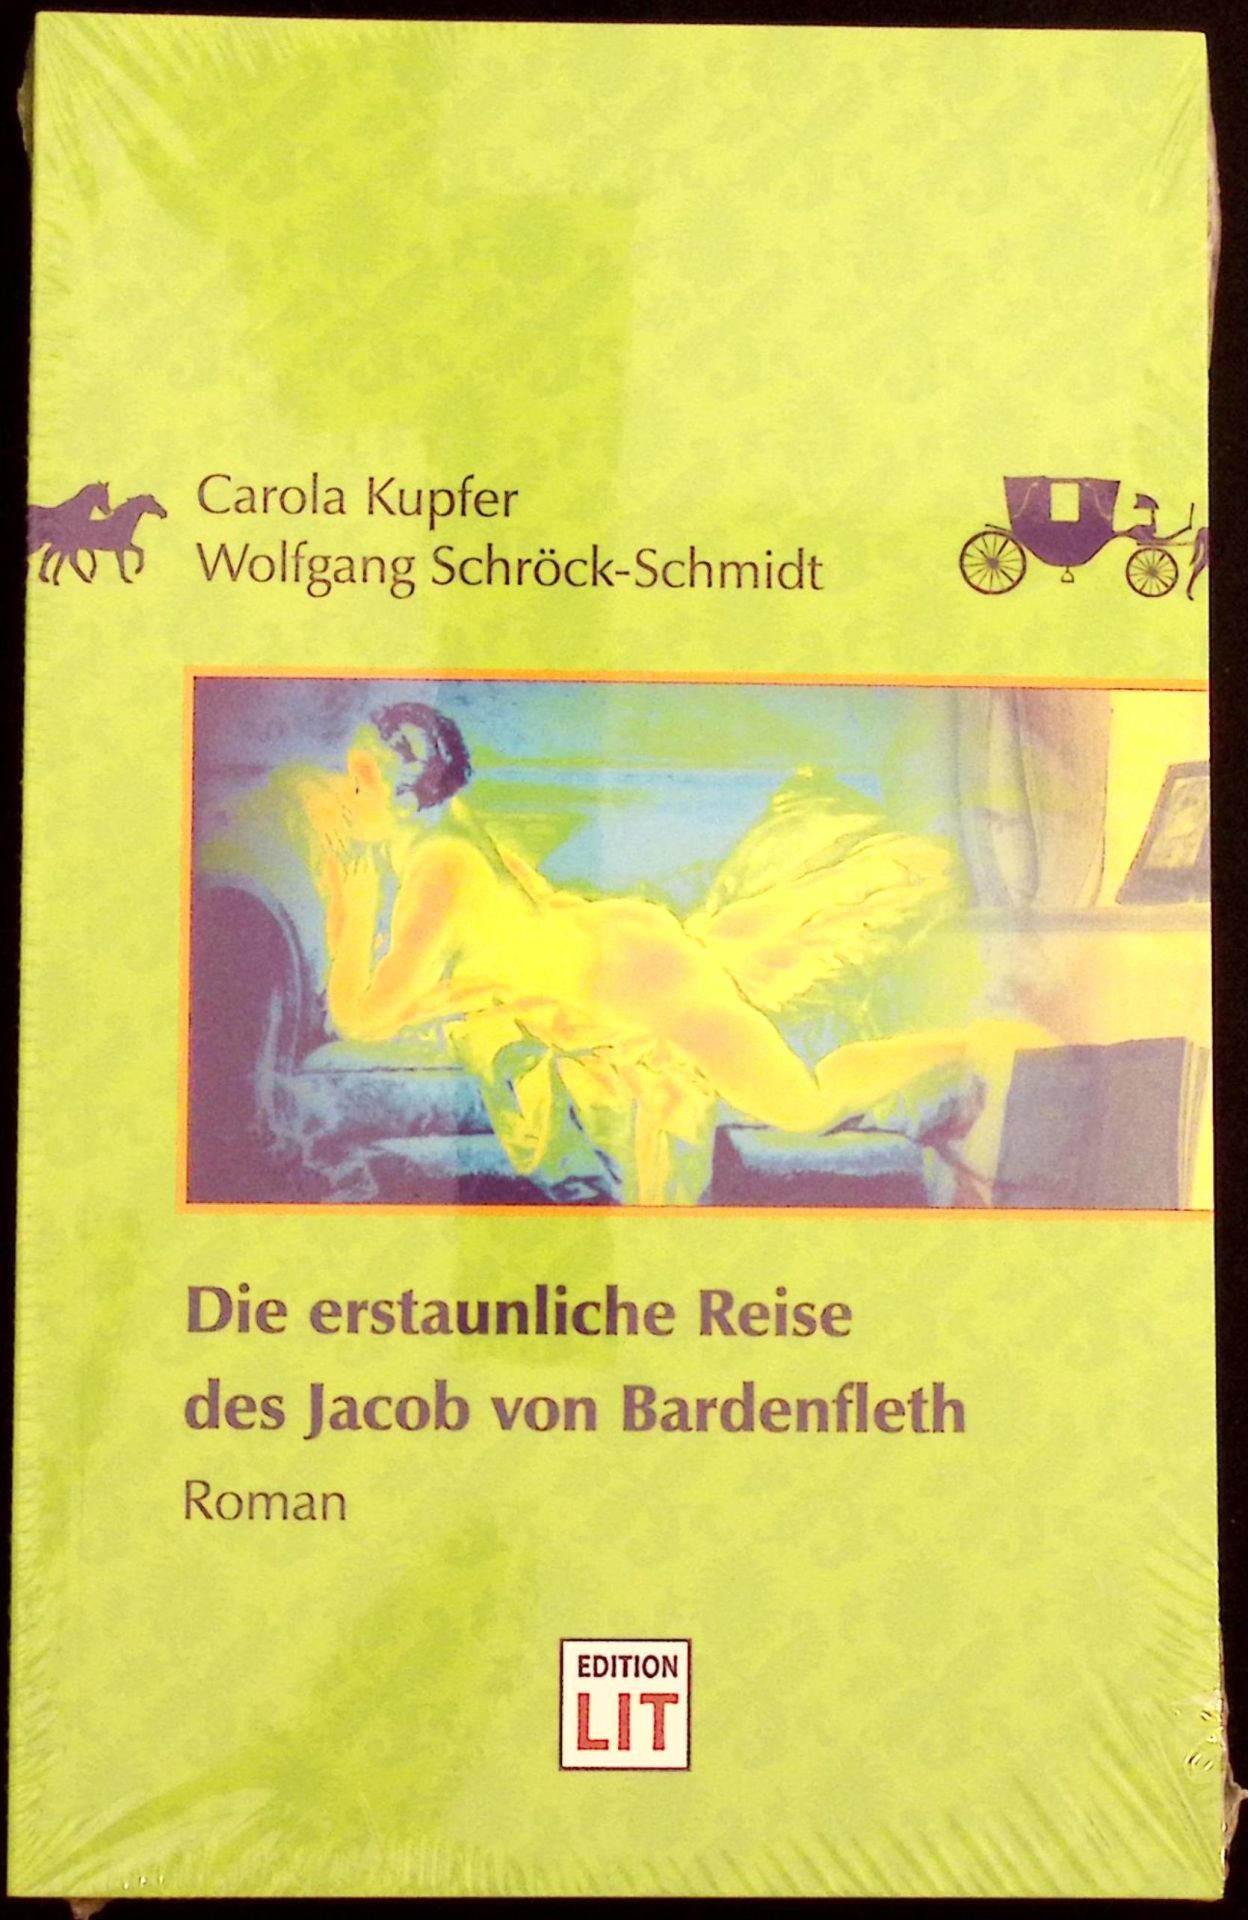 Die erstaunliche Reise des Jacob von Bardenfleth : Roman. Carola Kupfer ; Wolfgang Schröck-Schmidt - Kupfer, Carola und Wolfgang Schröck-Schmidt